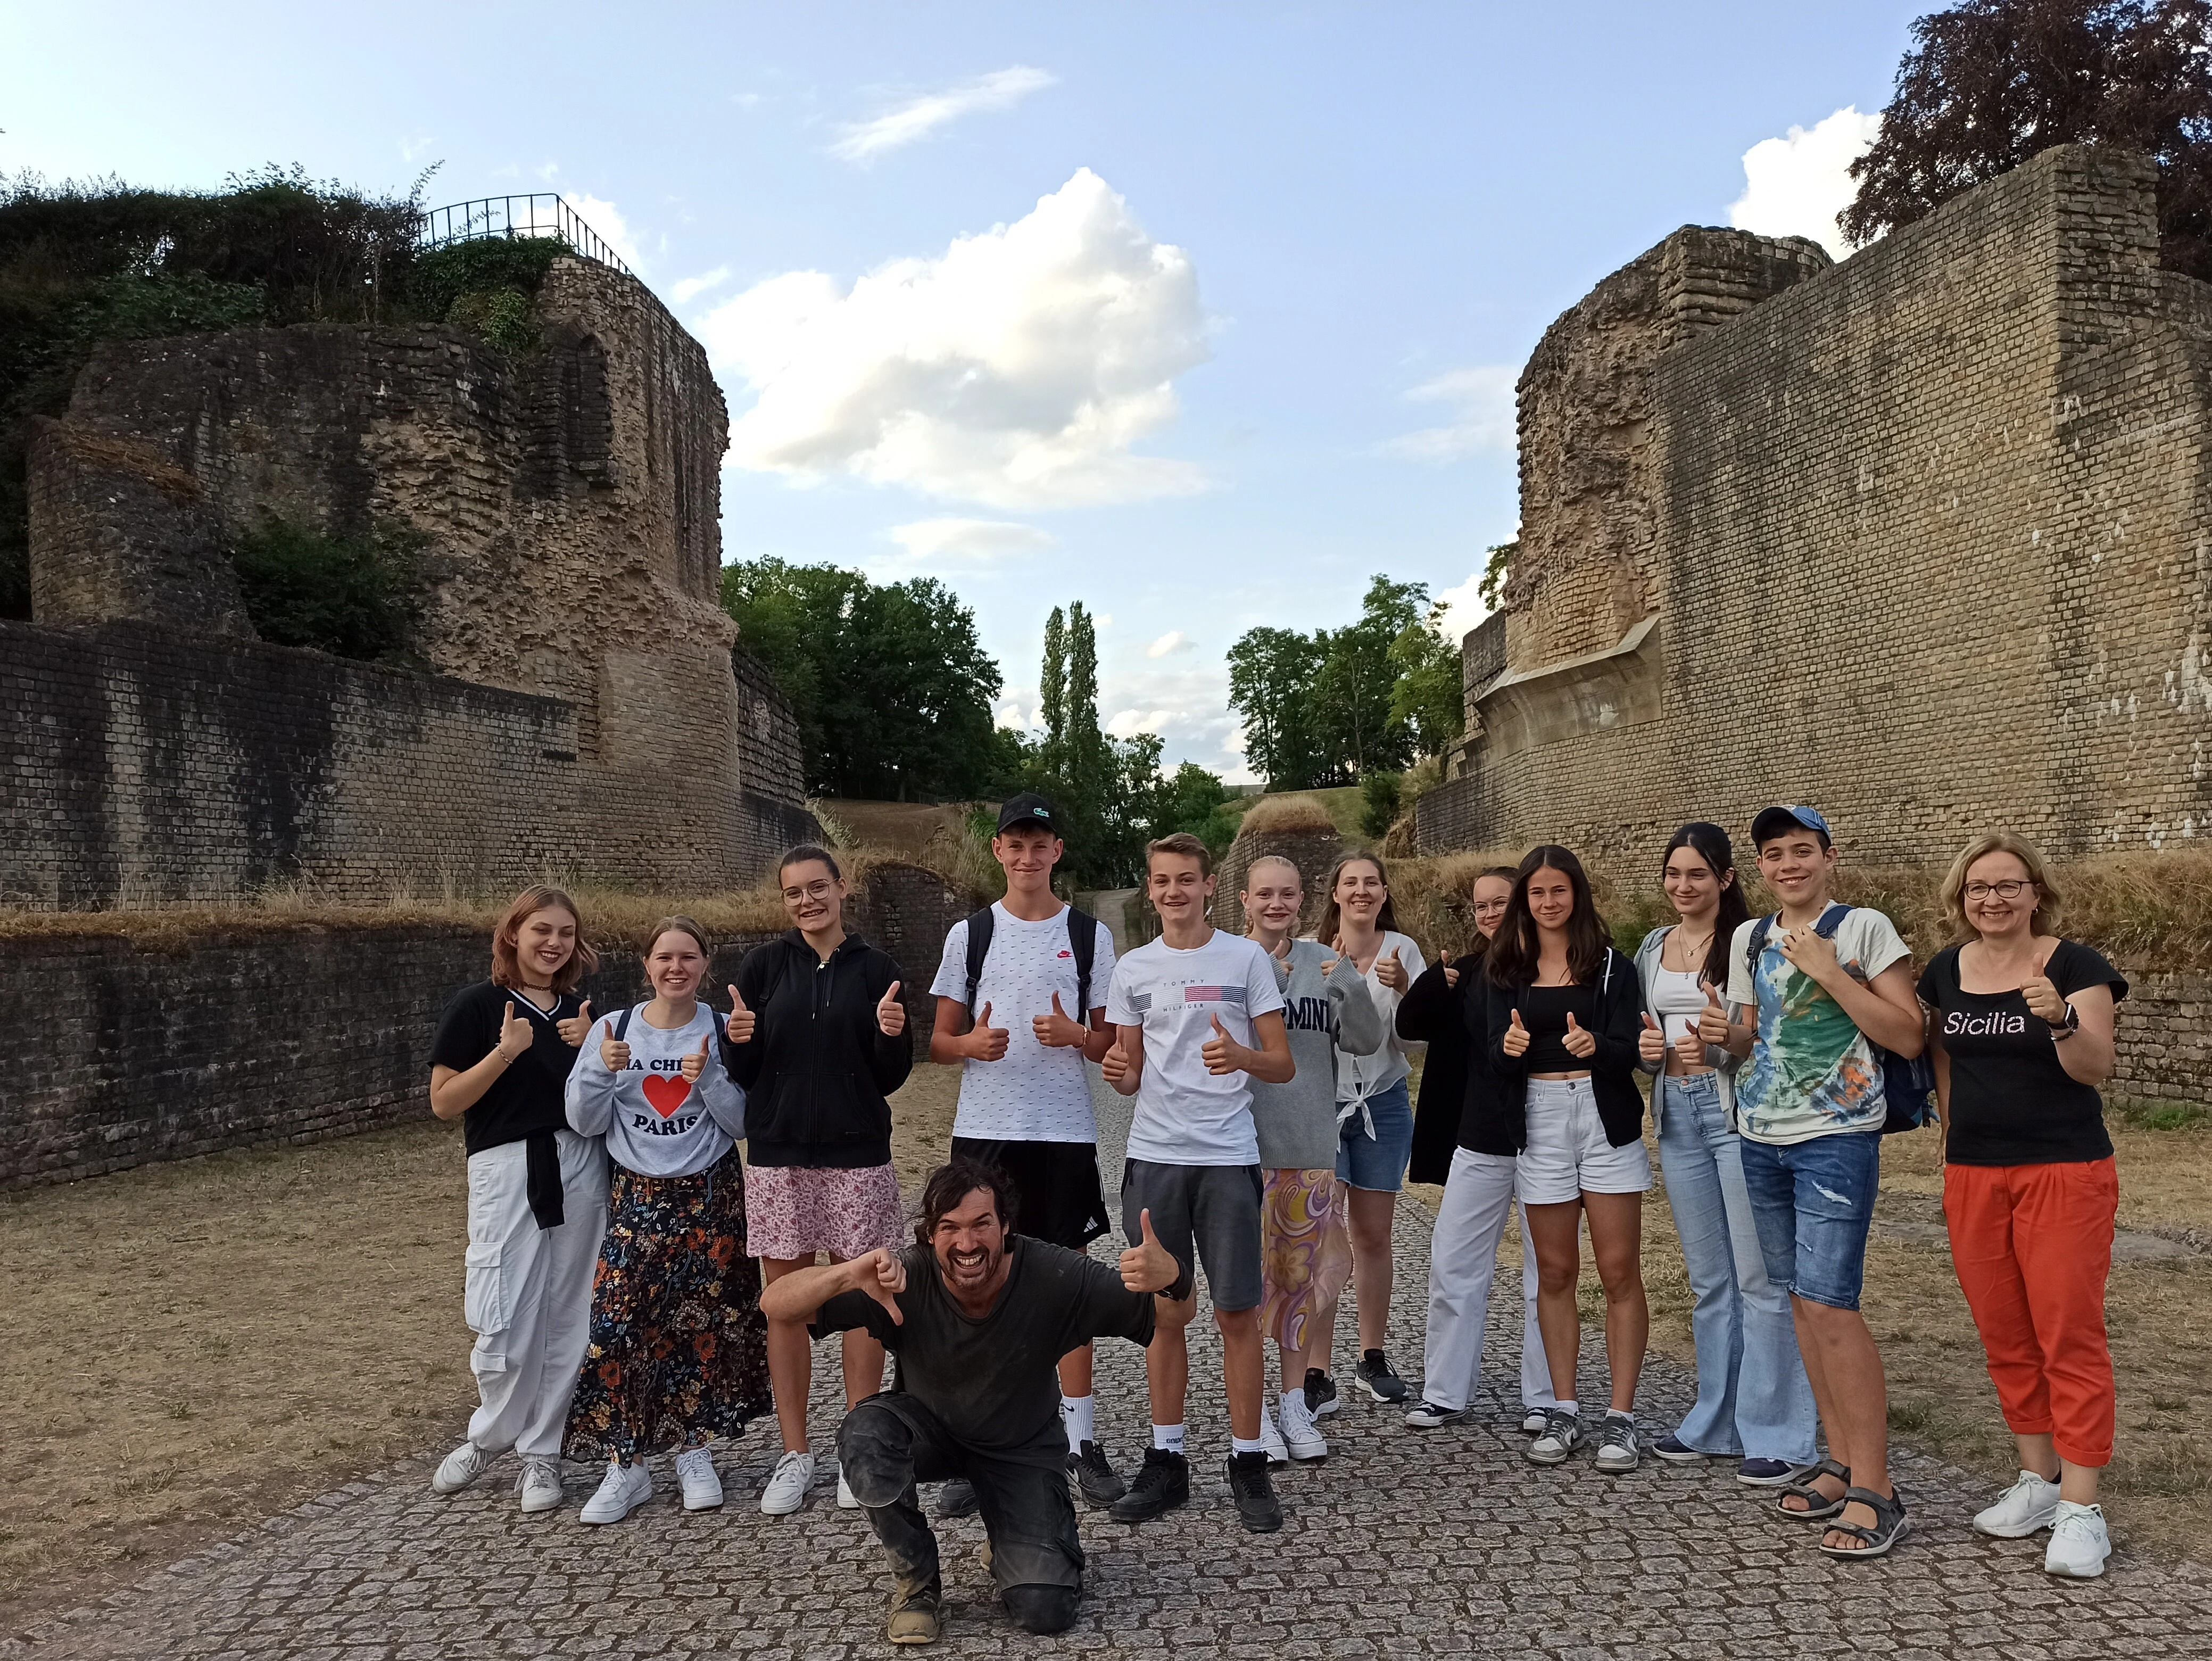 Gruppenphoto mit dem Gladiator Valerius